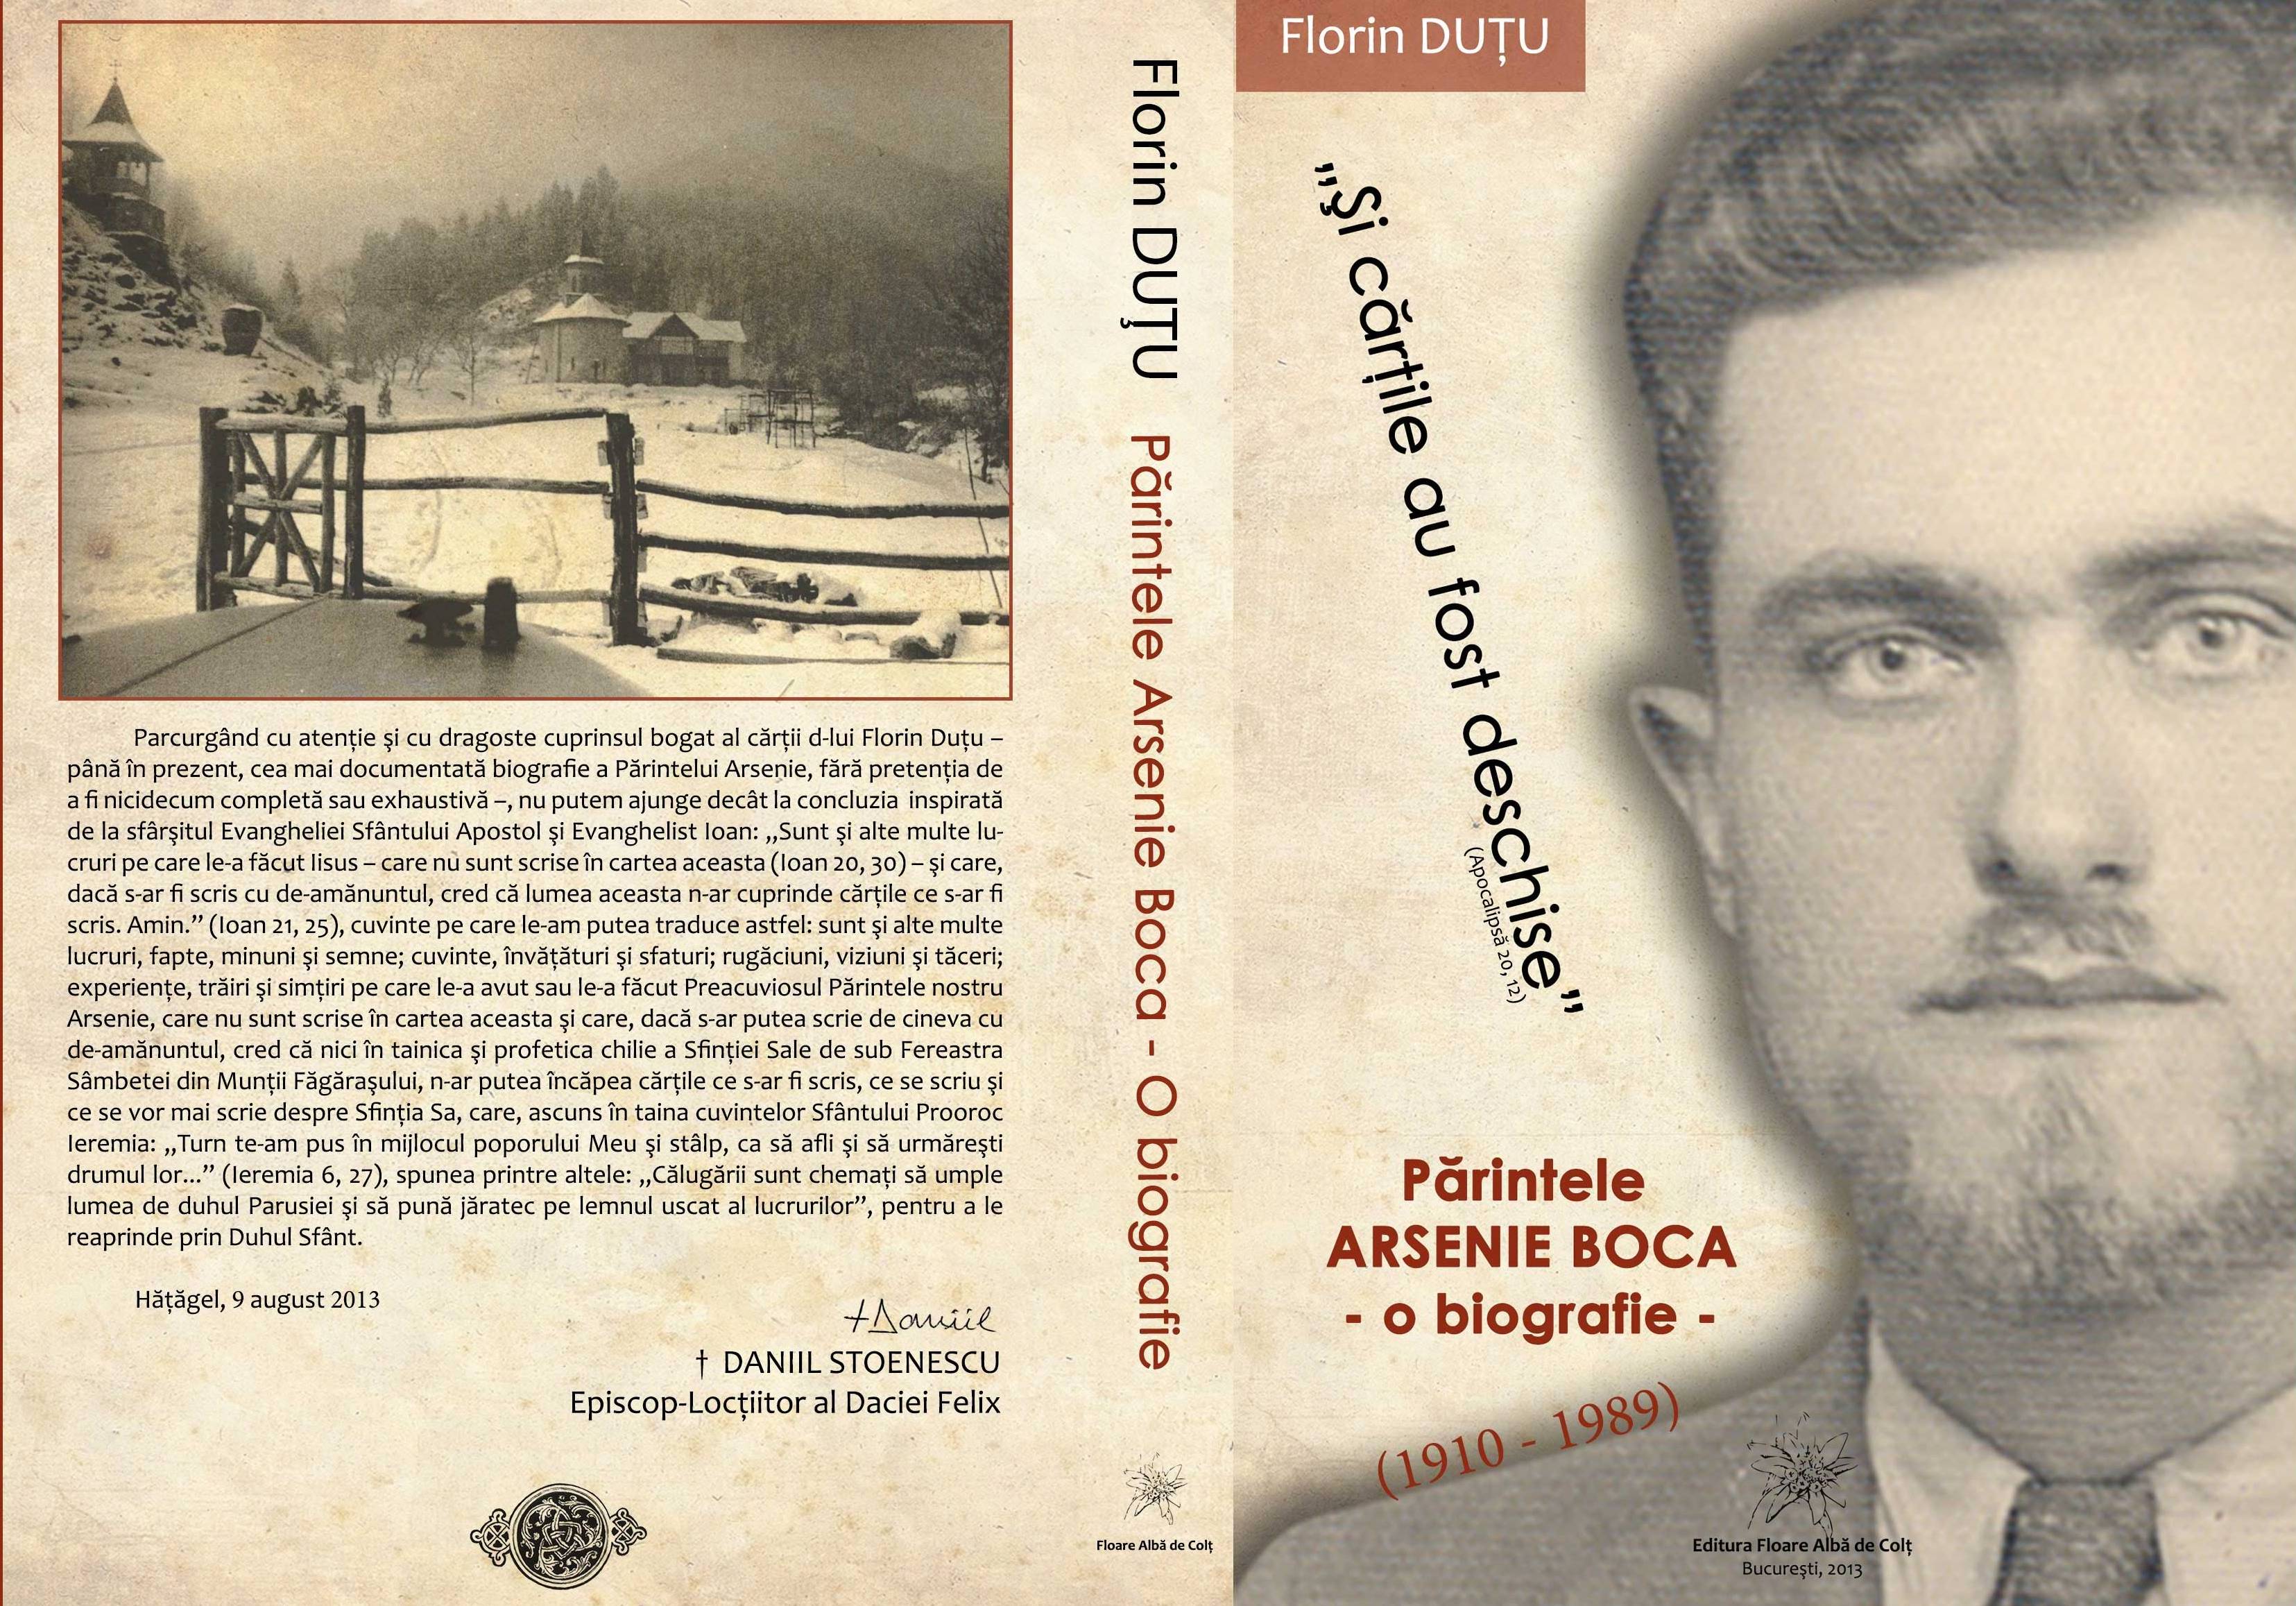 Florin Duţu: O biografie a Părintelui Arsenie Boca